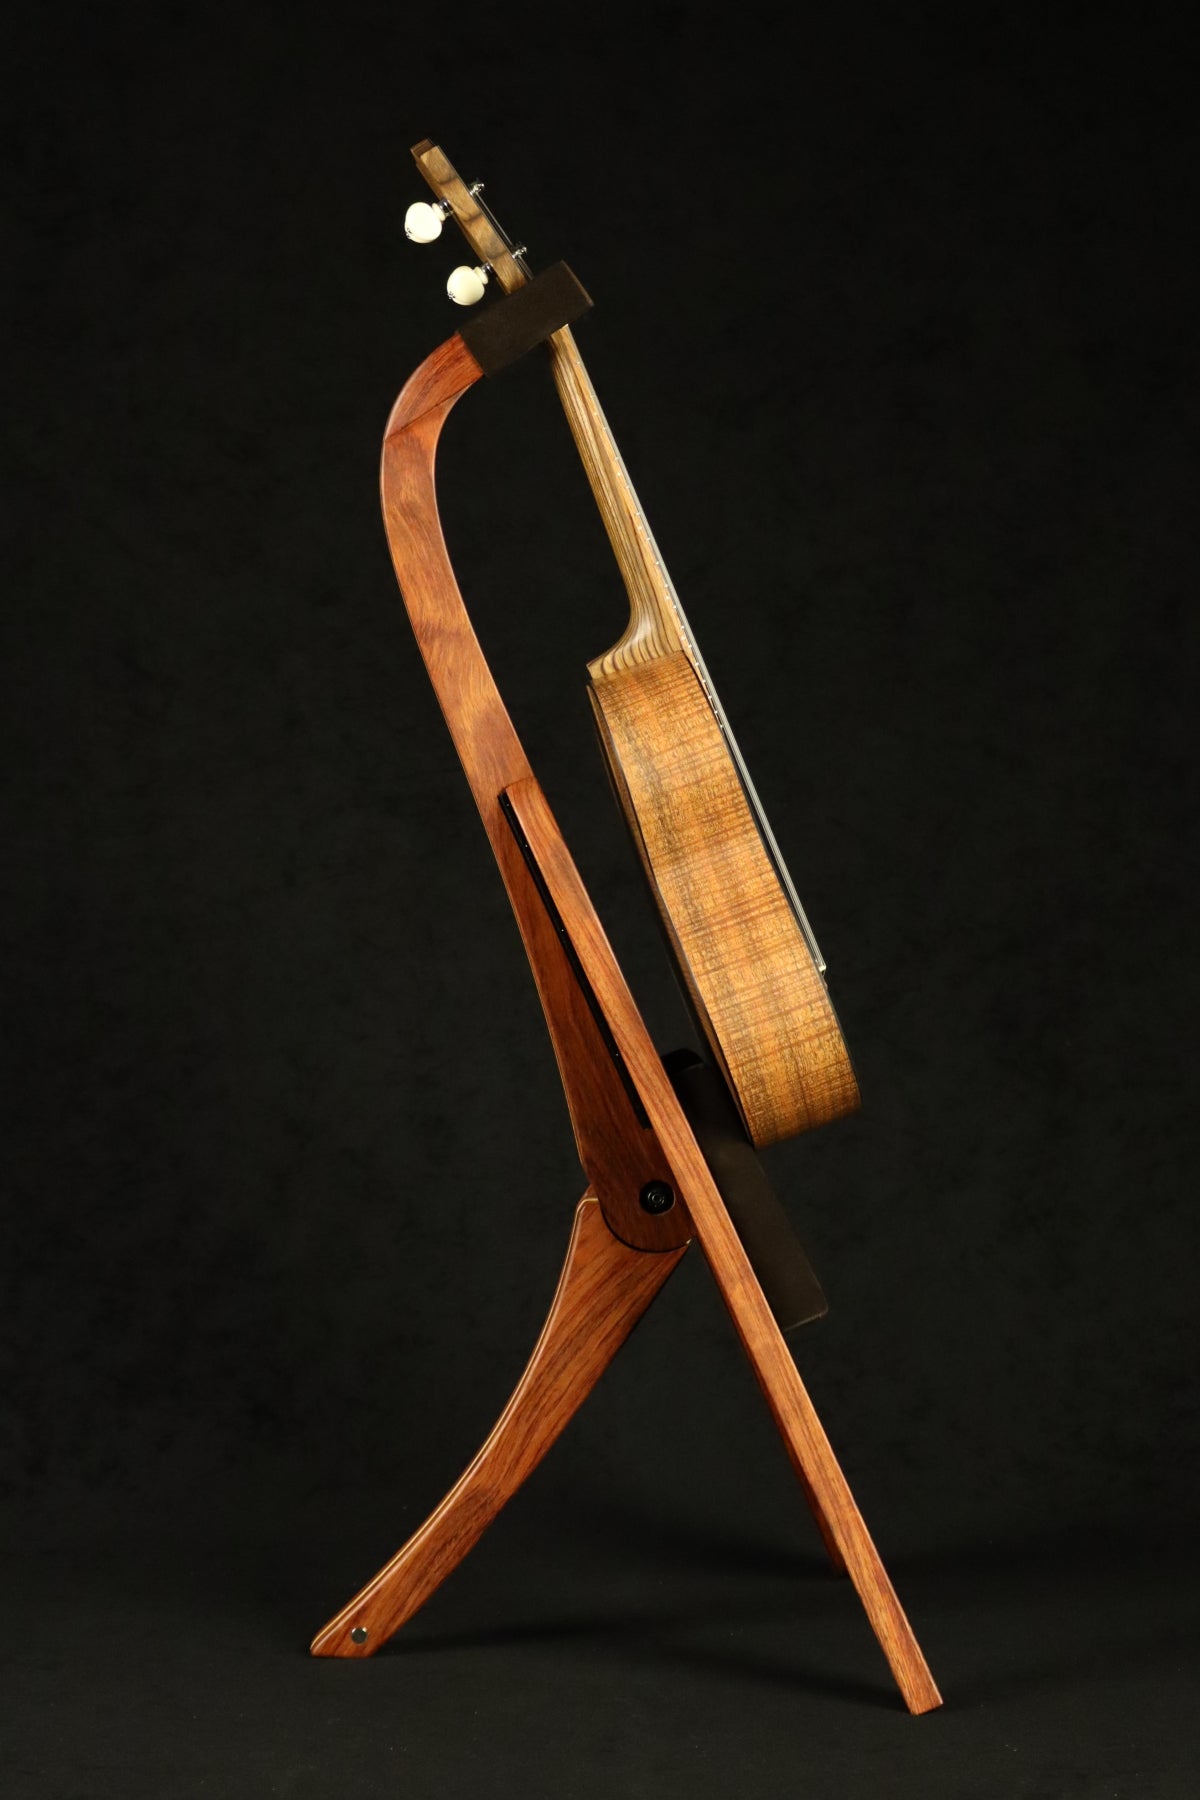 Folding bubinga rosewood and curly maple wood ukulele floor stand full side image with Martin ukulele